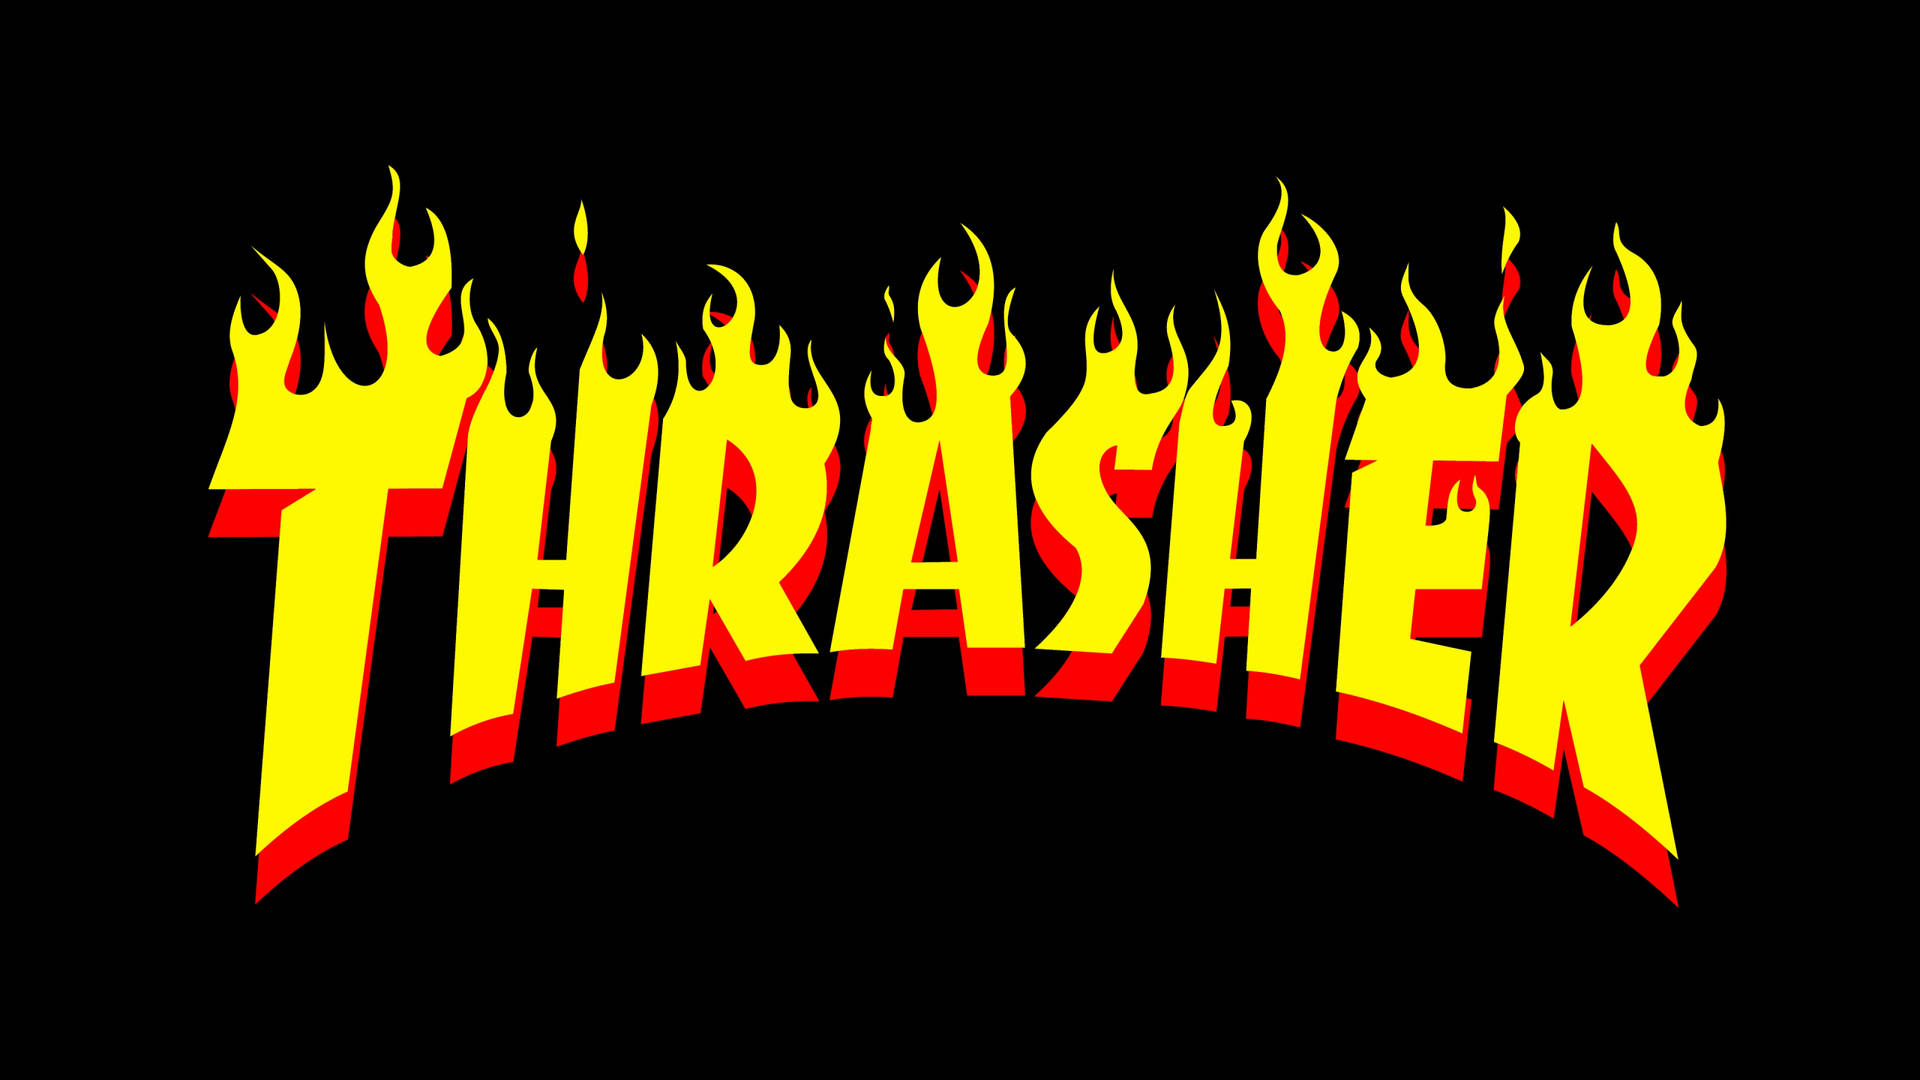 Hình nền Thrasher miễn phí là lựa chọn hoàn hảo cho các bạn yêu thích thời trang streetwear. Tạo nên một không gian làm việc đầy phong cách và năng động với các hình nền Thrasher được cung cấp hoàn toàn miễn phí.